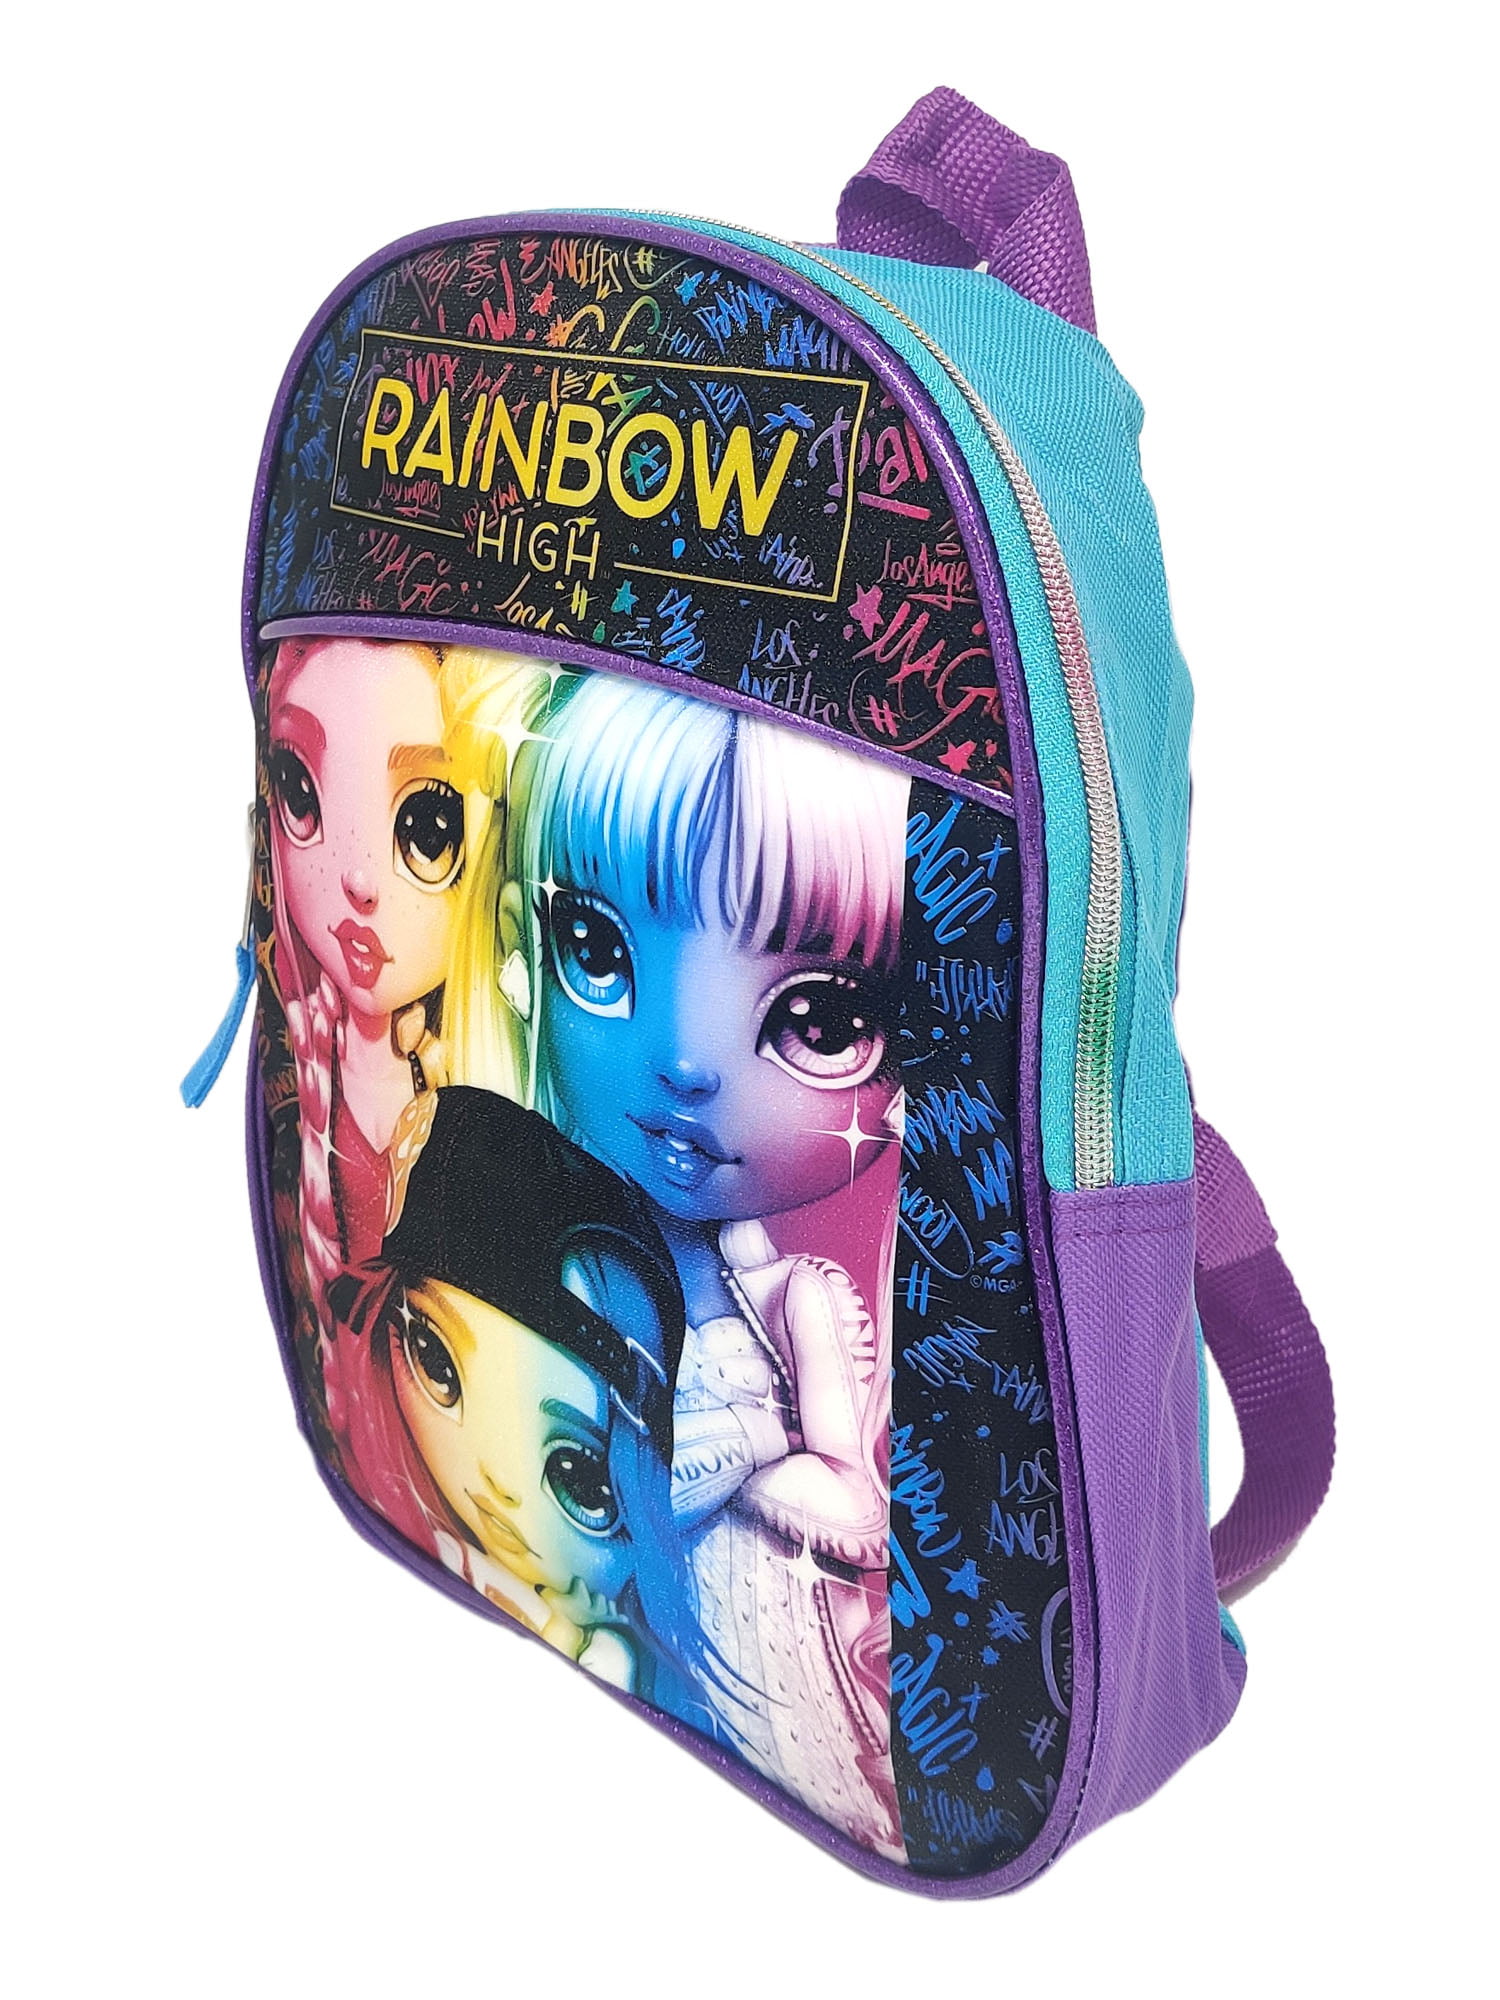 La Random Cat Dog Together Large School Backpack Book Bag Laptop Travel Daypack for Kids Girls Boys